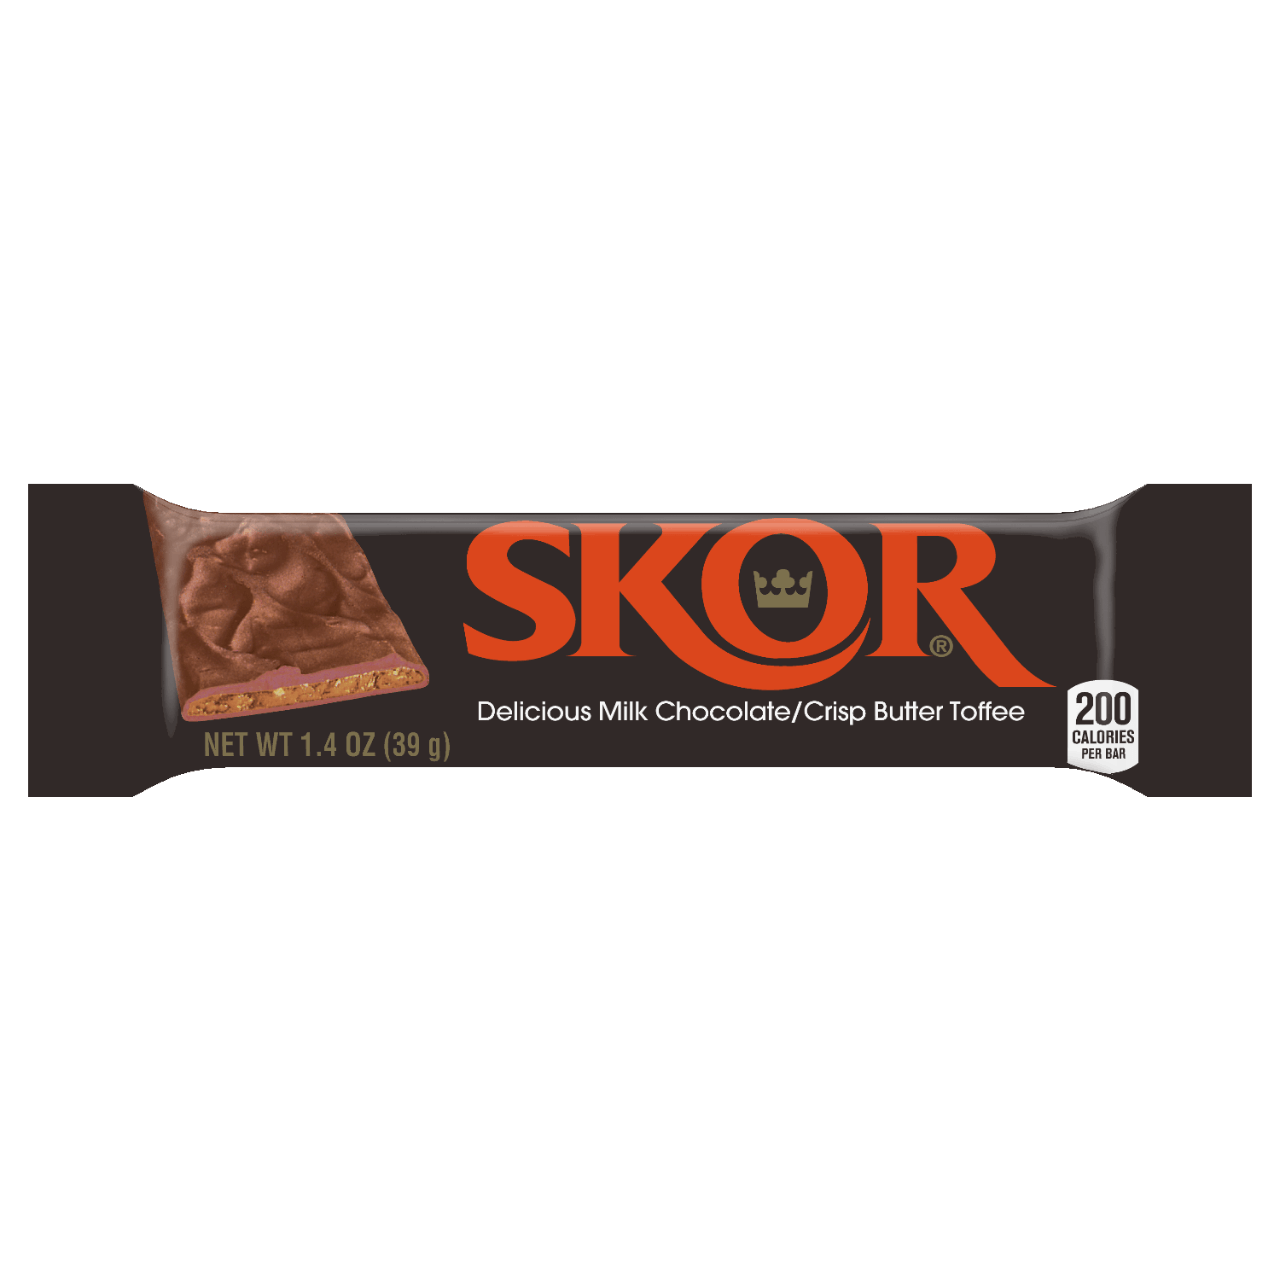 SKOR Logo - PNG Skor Transparent Skor.PNG Images. | PlusPNG